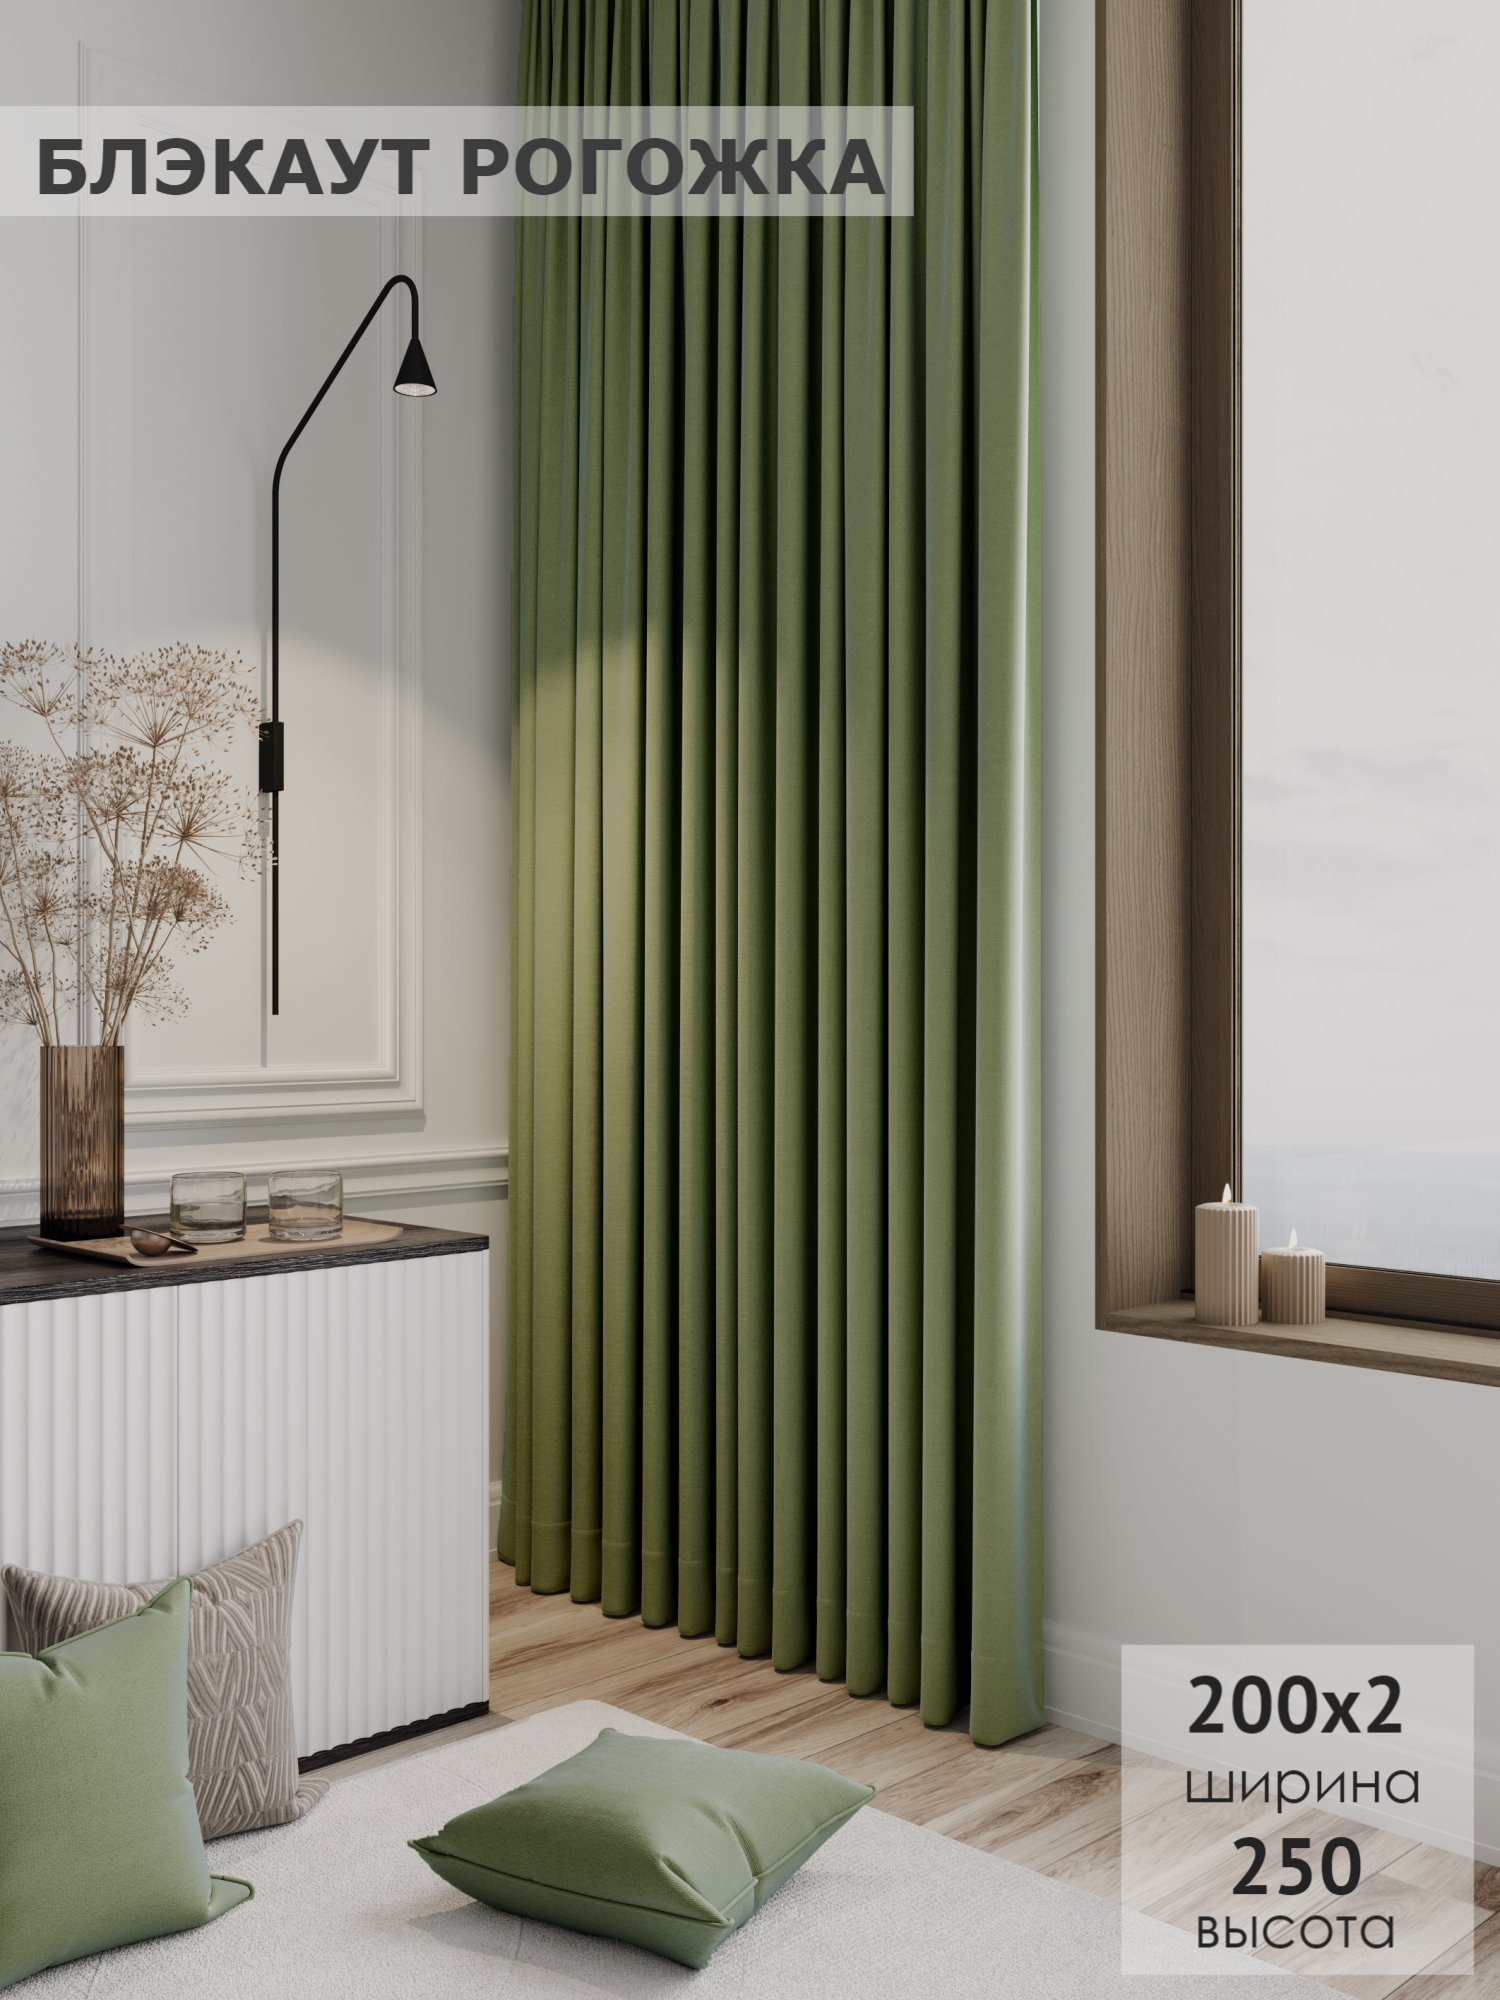 Комплект штор Блэкаут - рогожка 200х250 - 2шт KS interior textile цвет светло-зеленый